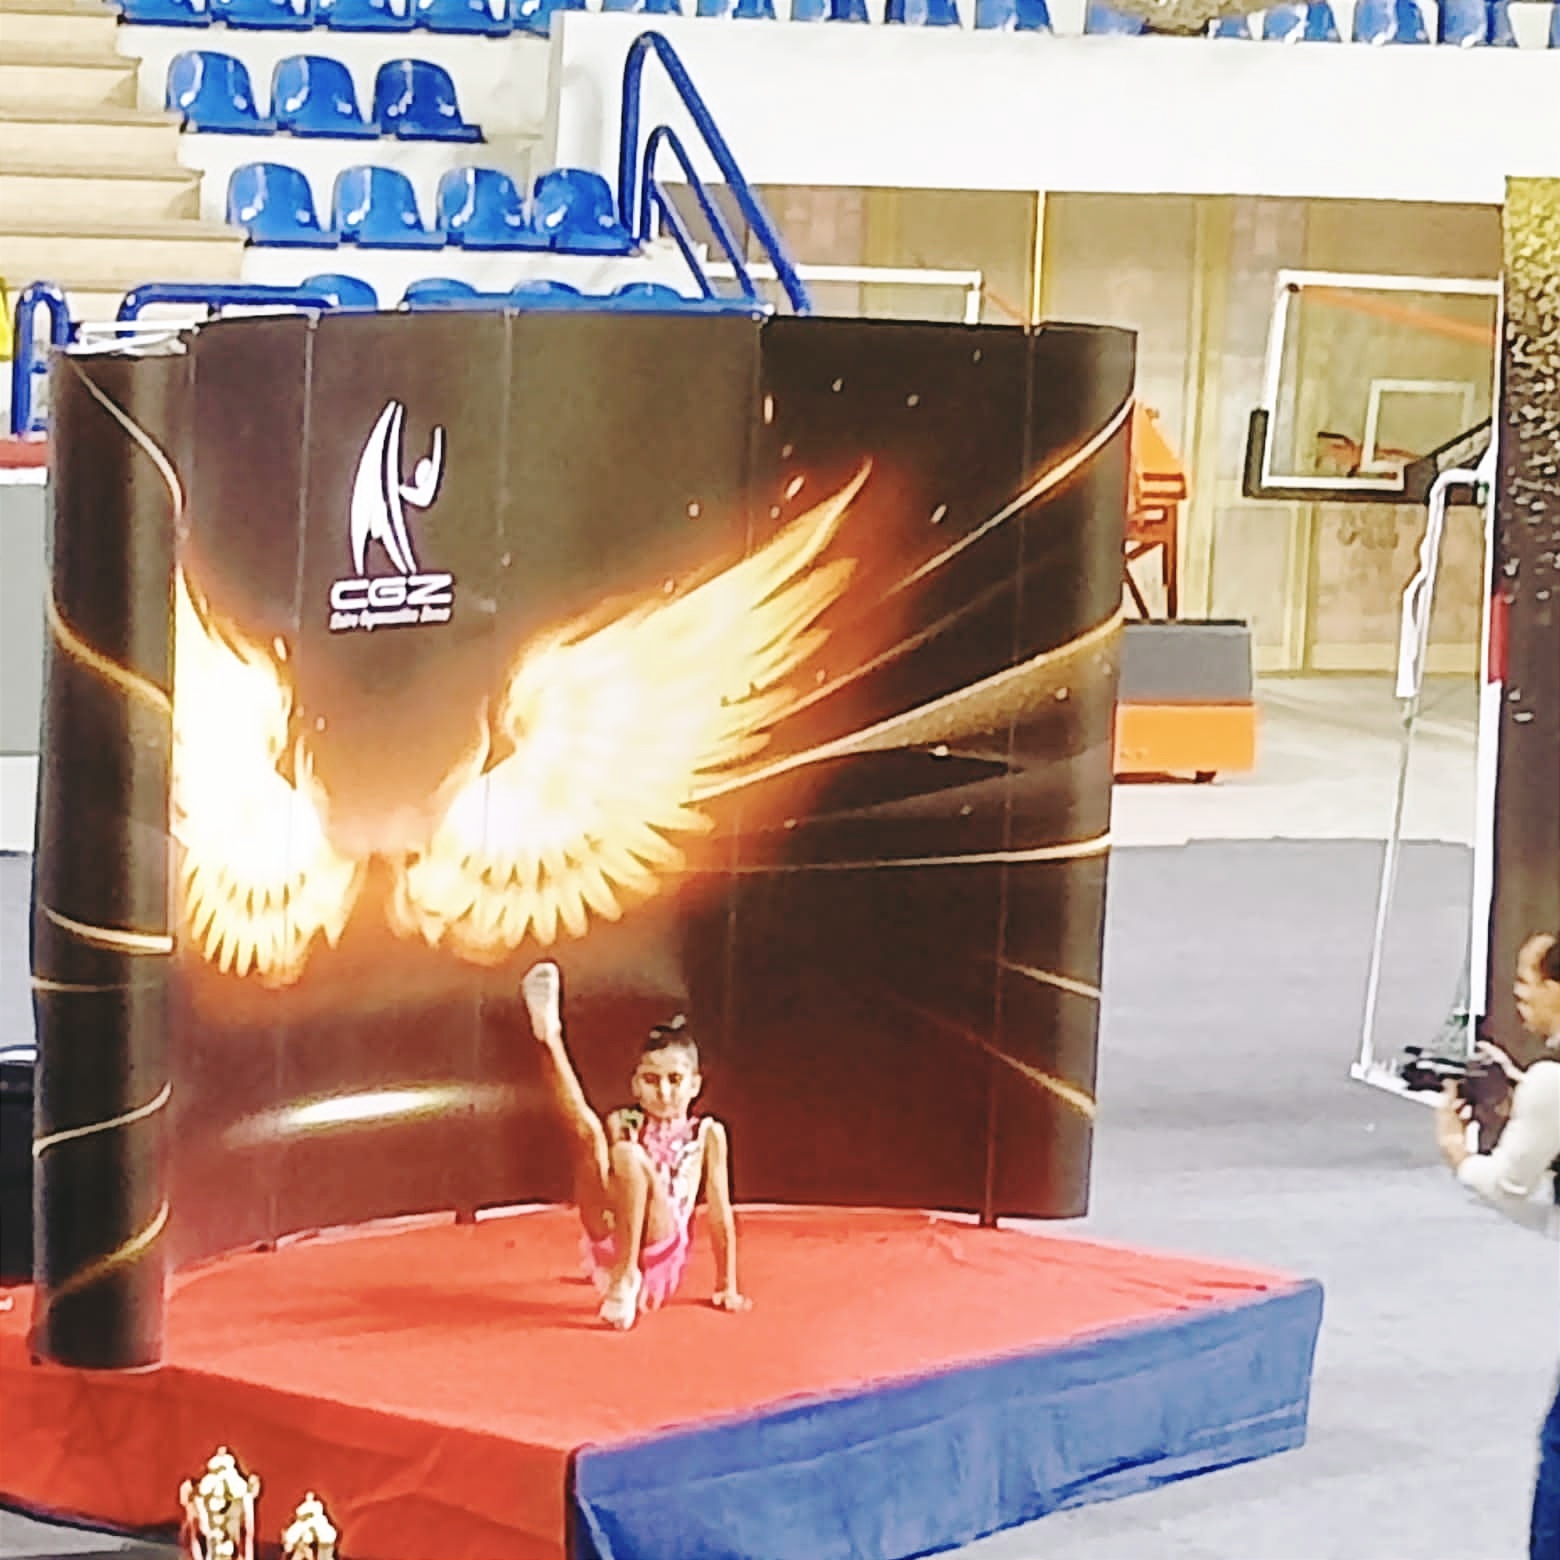 يارا شريف تحرز ميدالية بطولة القاهرة للجمباز